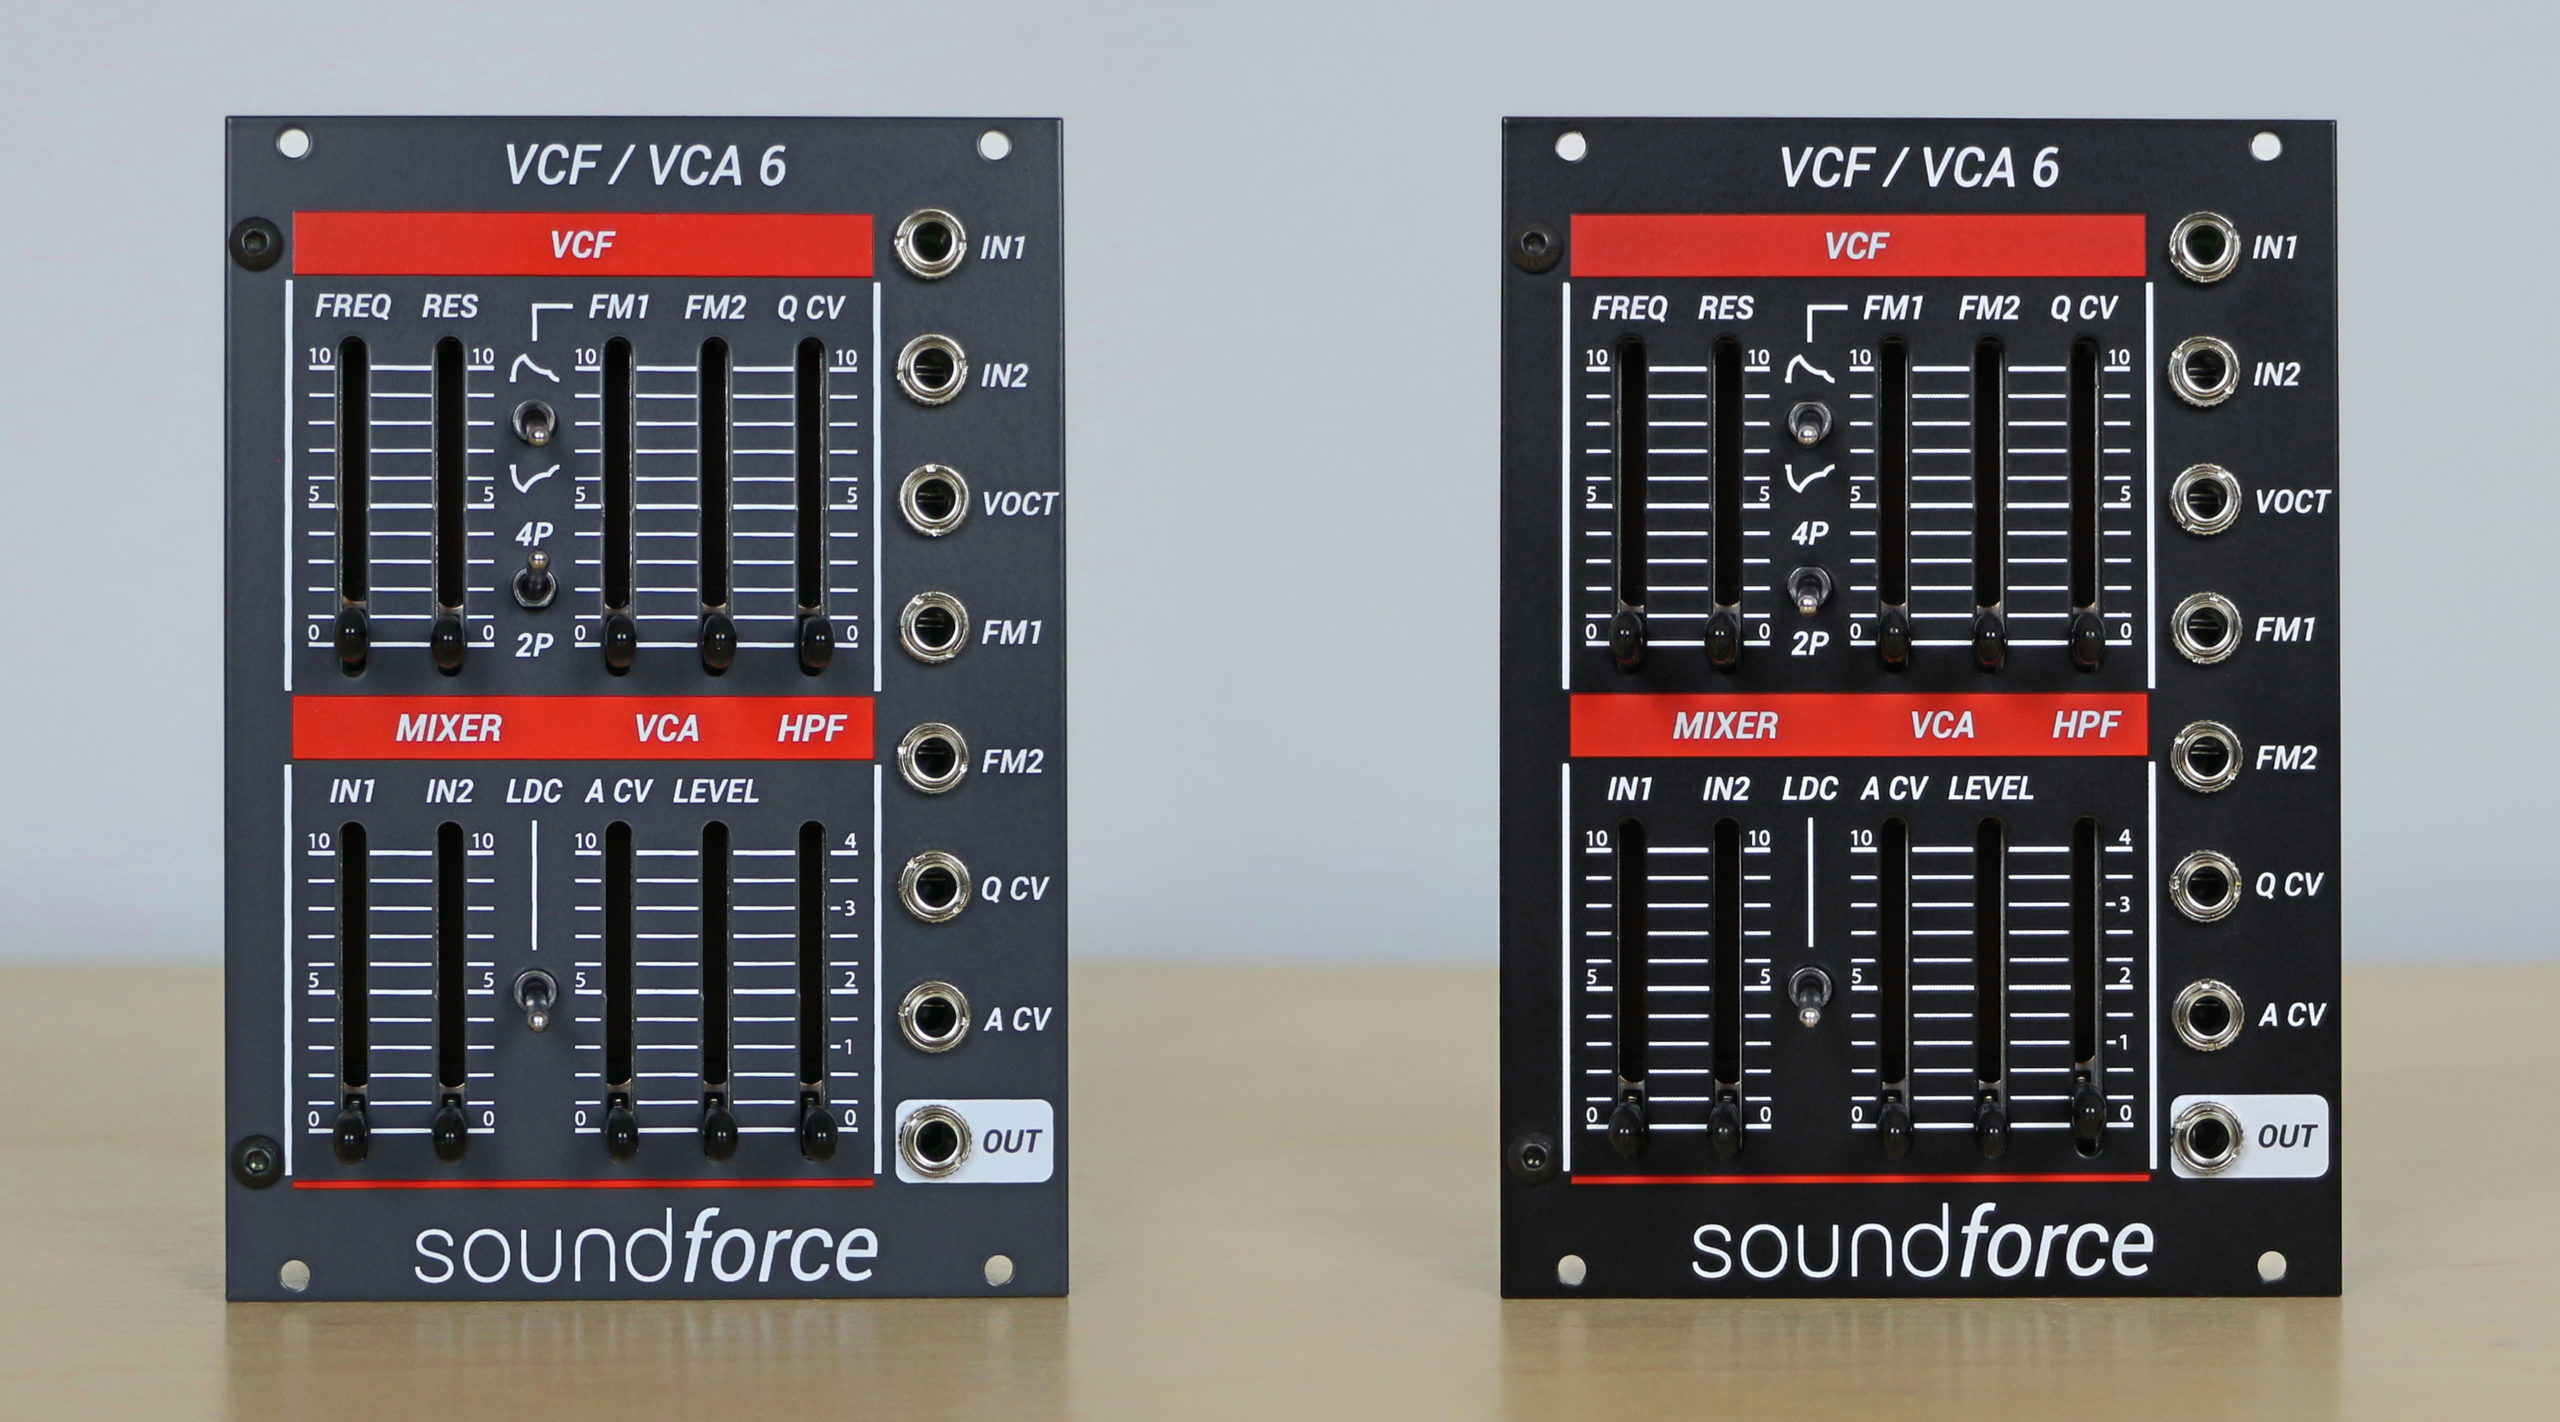 VCF/VCA 6 – SoundForce